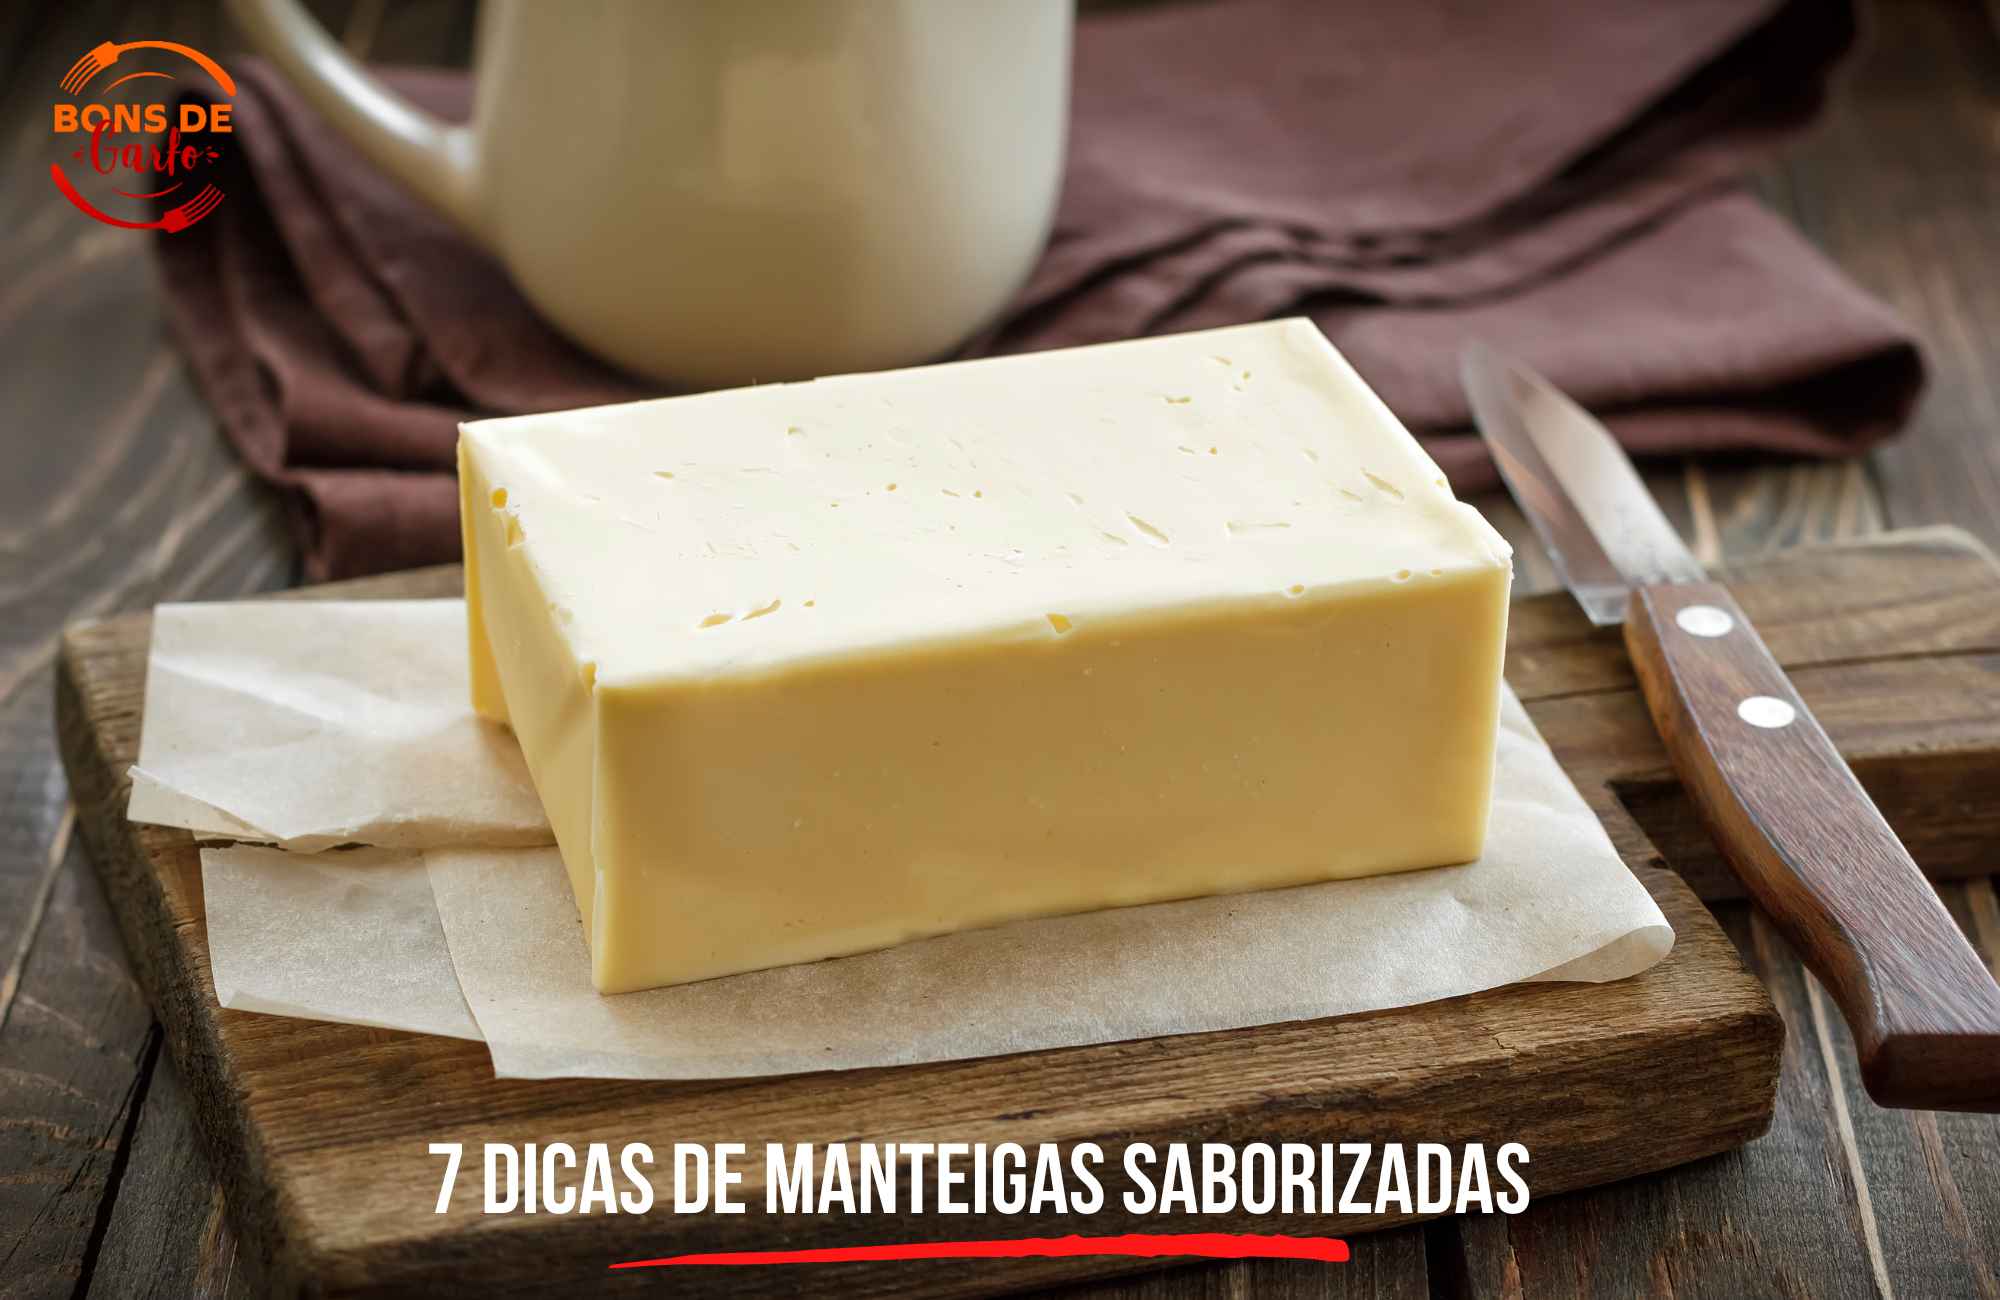 7 dicas de manteigas saborizadas